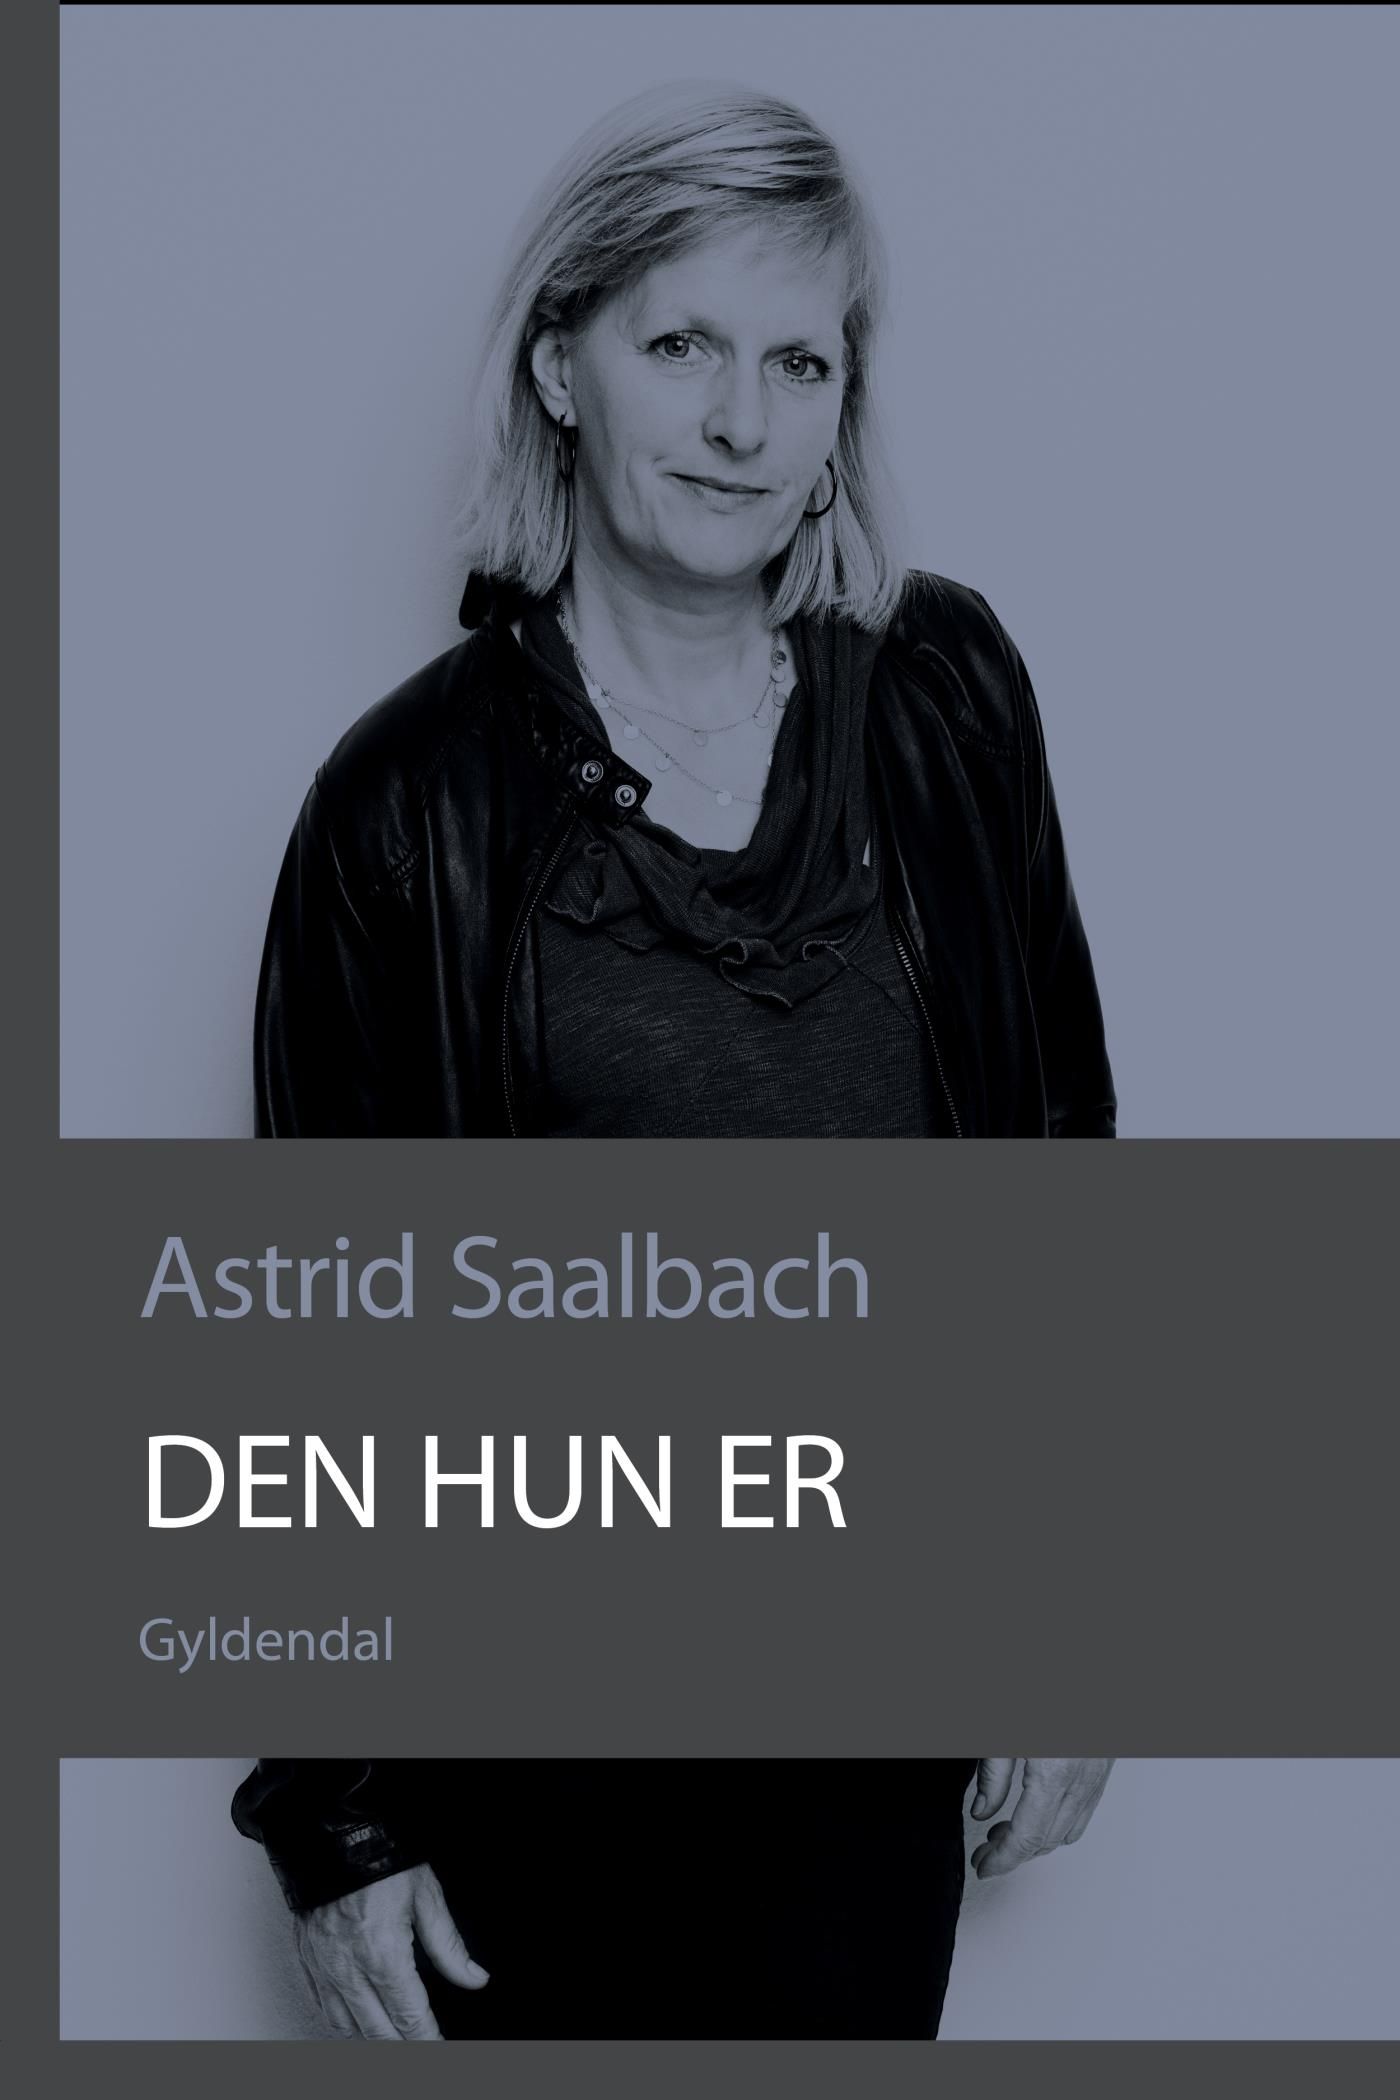 Den hun er, e-bog af Astrid Saalbach